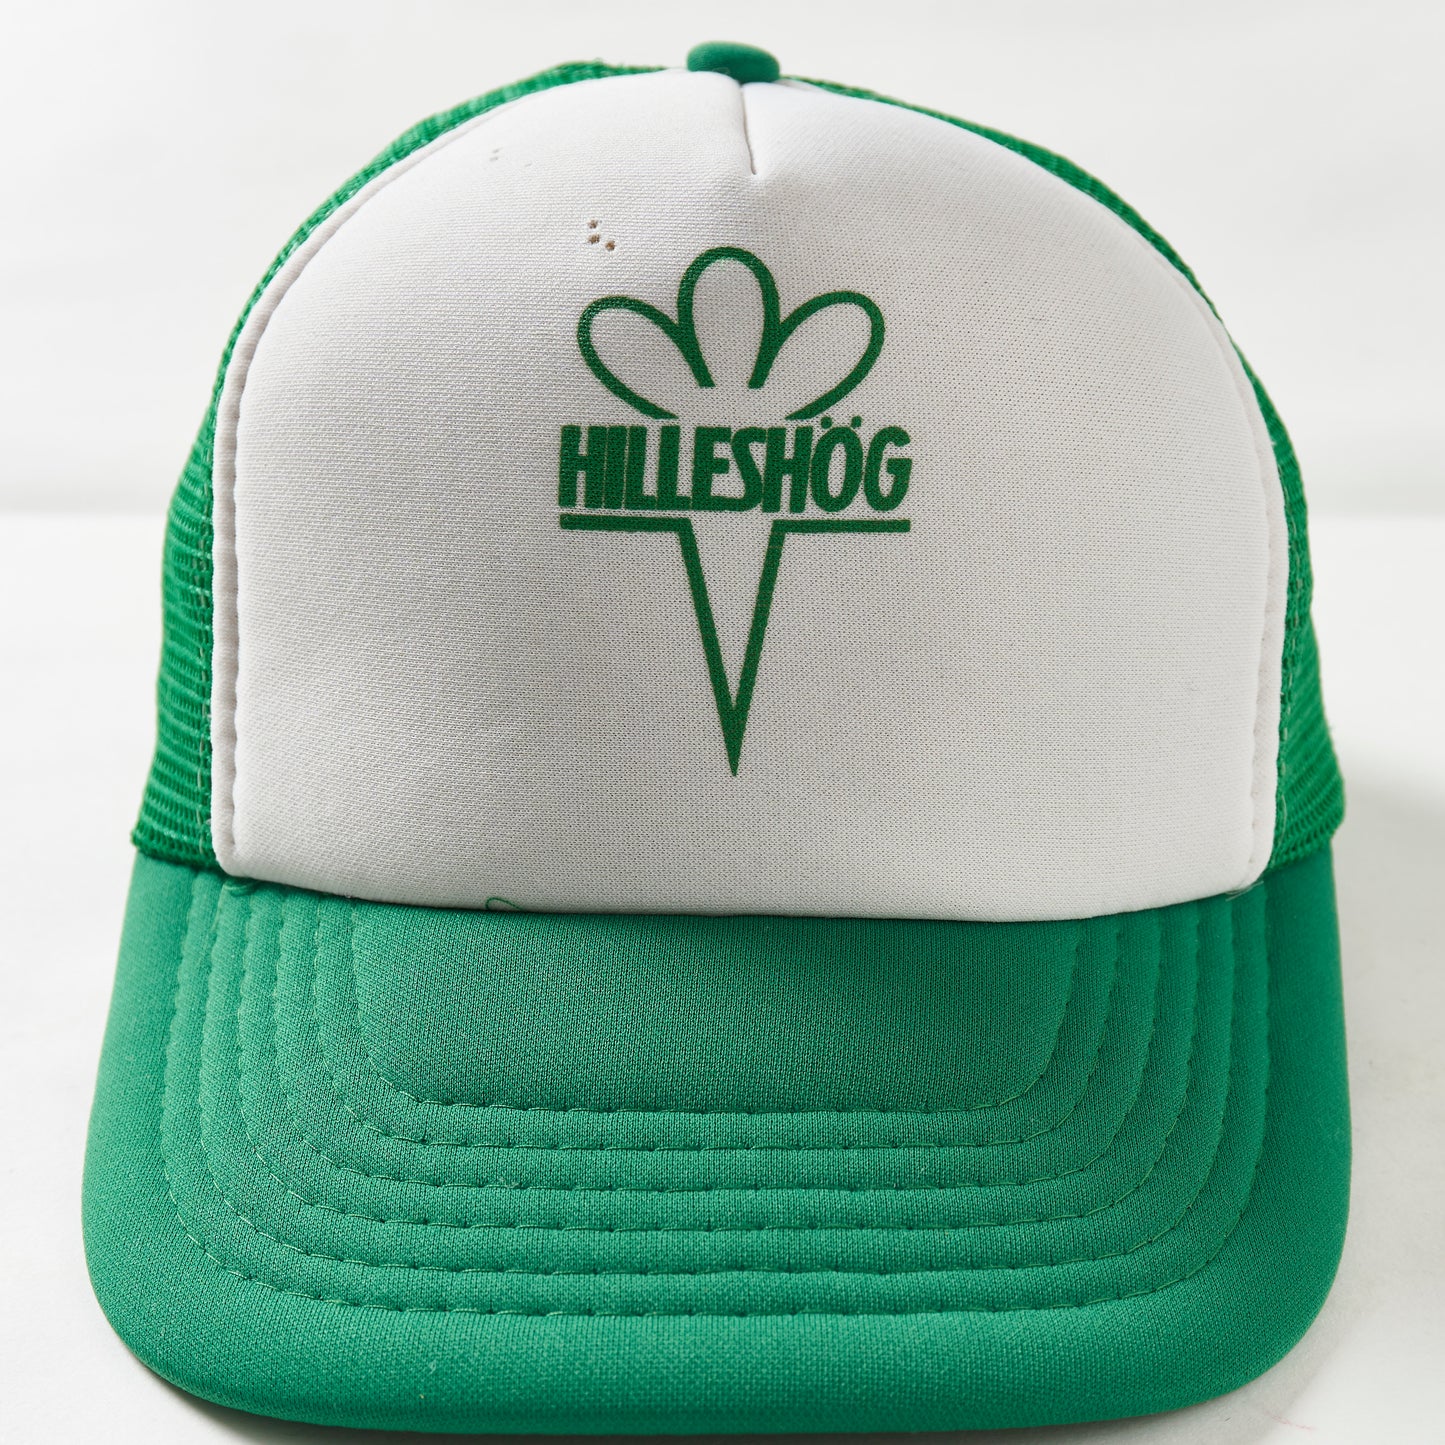 Vintage Hilleshog Trucker Hat